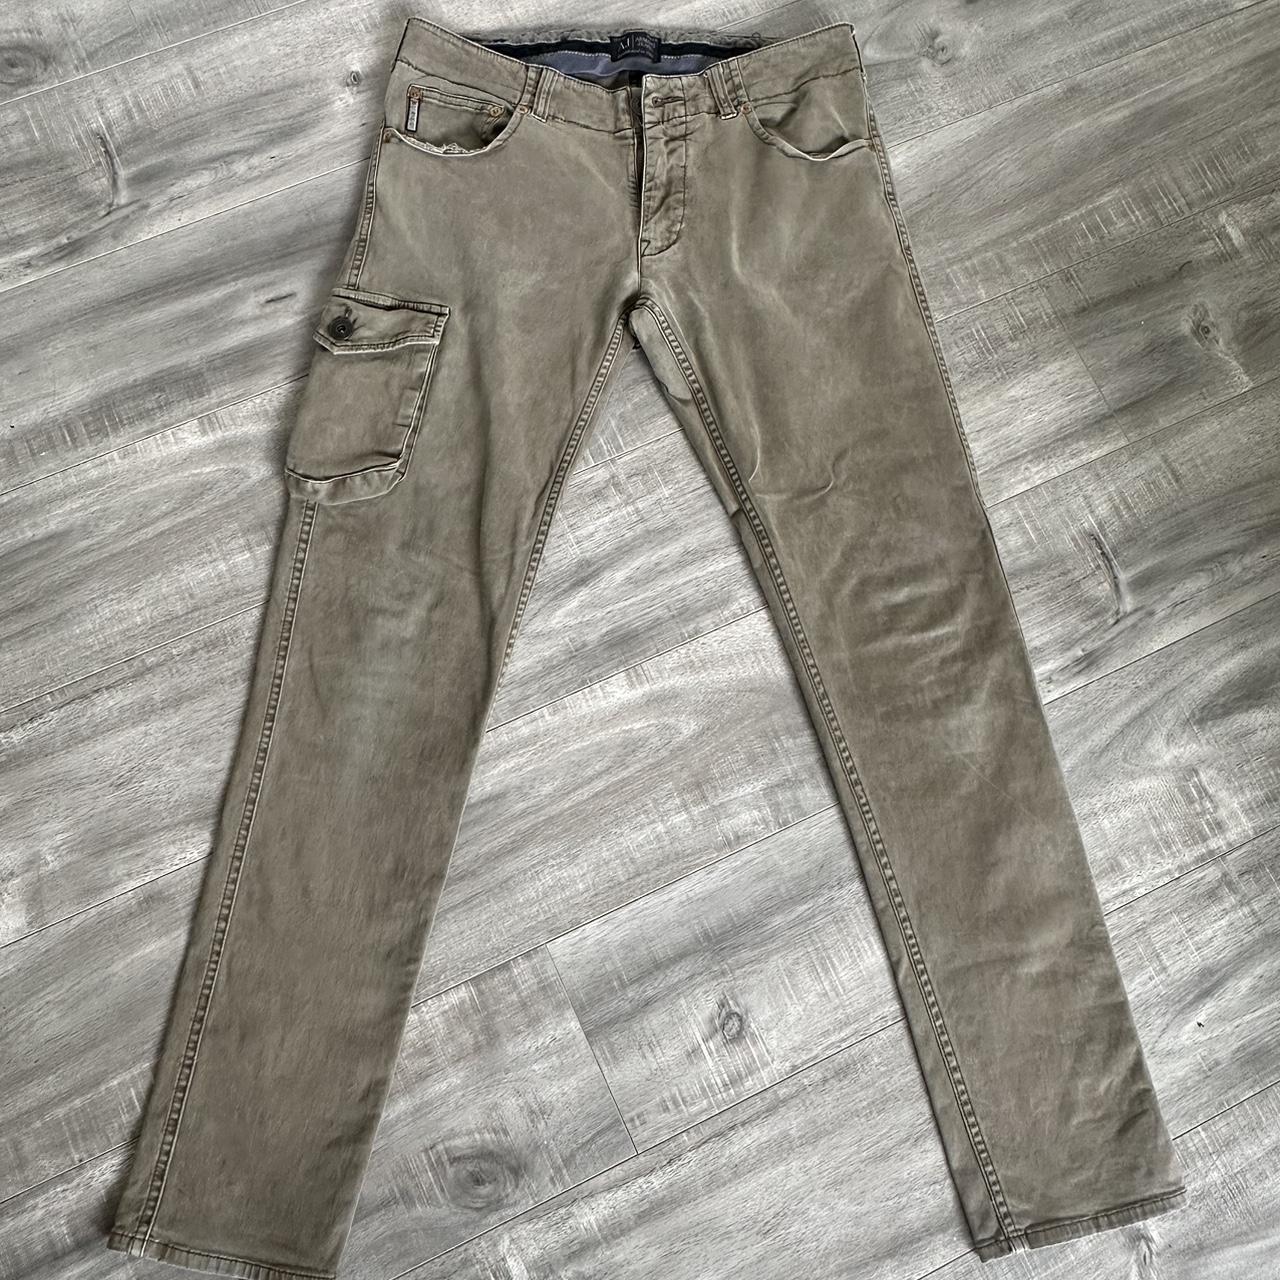 Armani Jeans Men's Khaki and Tan Trousers